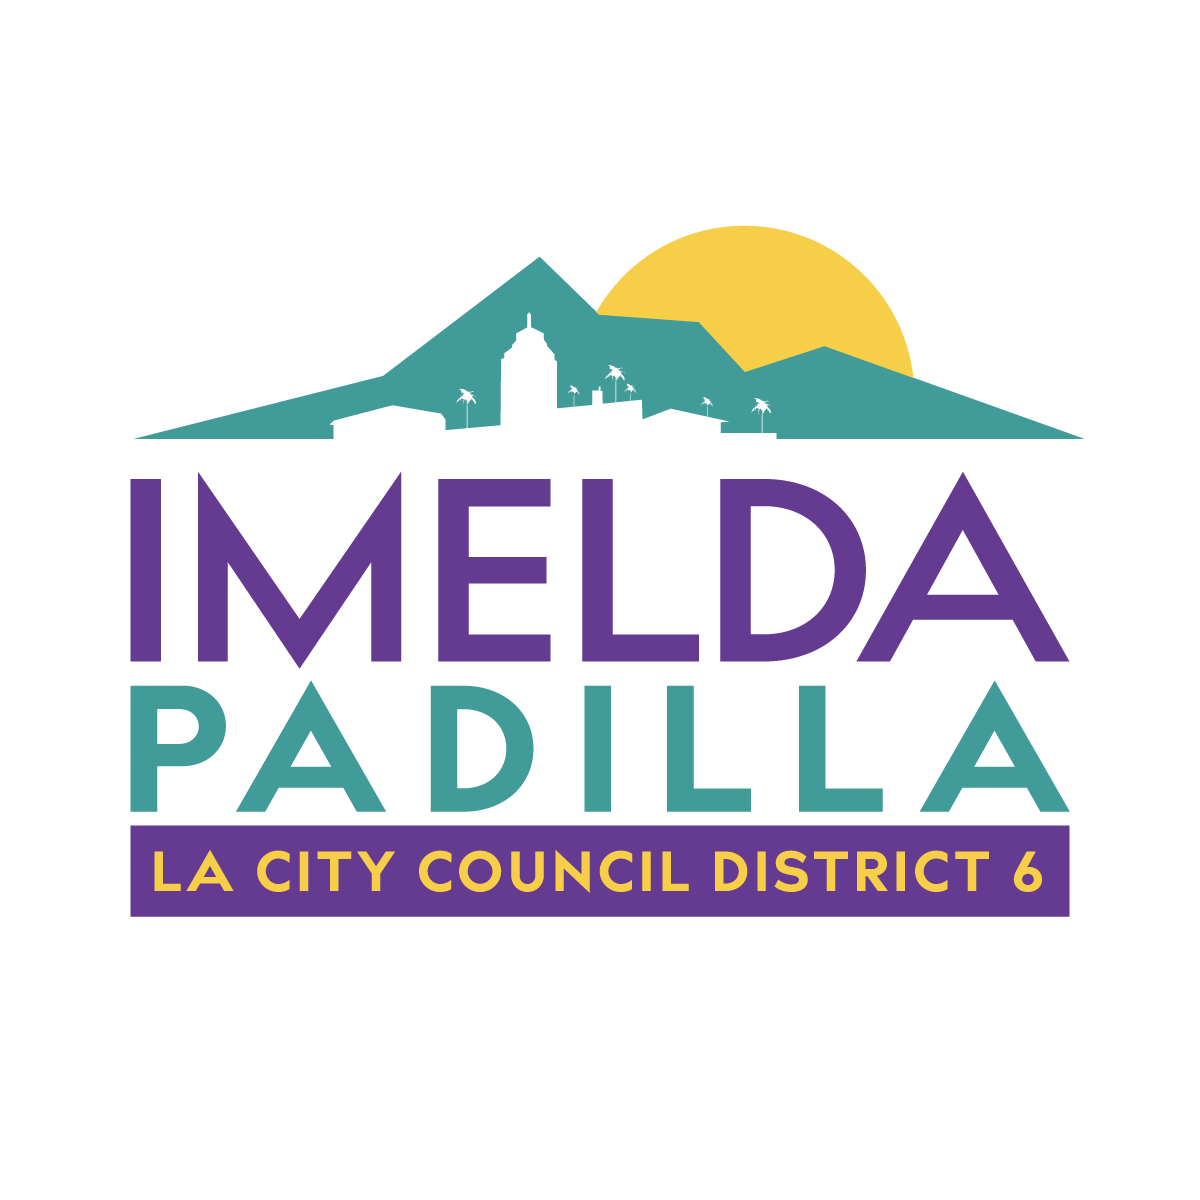 Imelda Padilla for LA City Council District 6